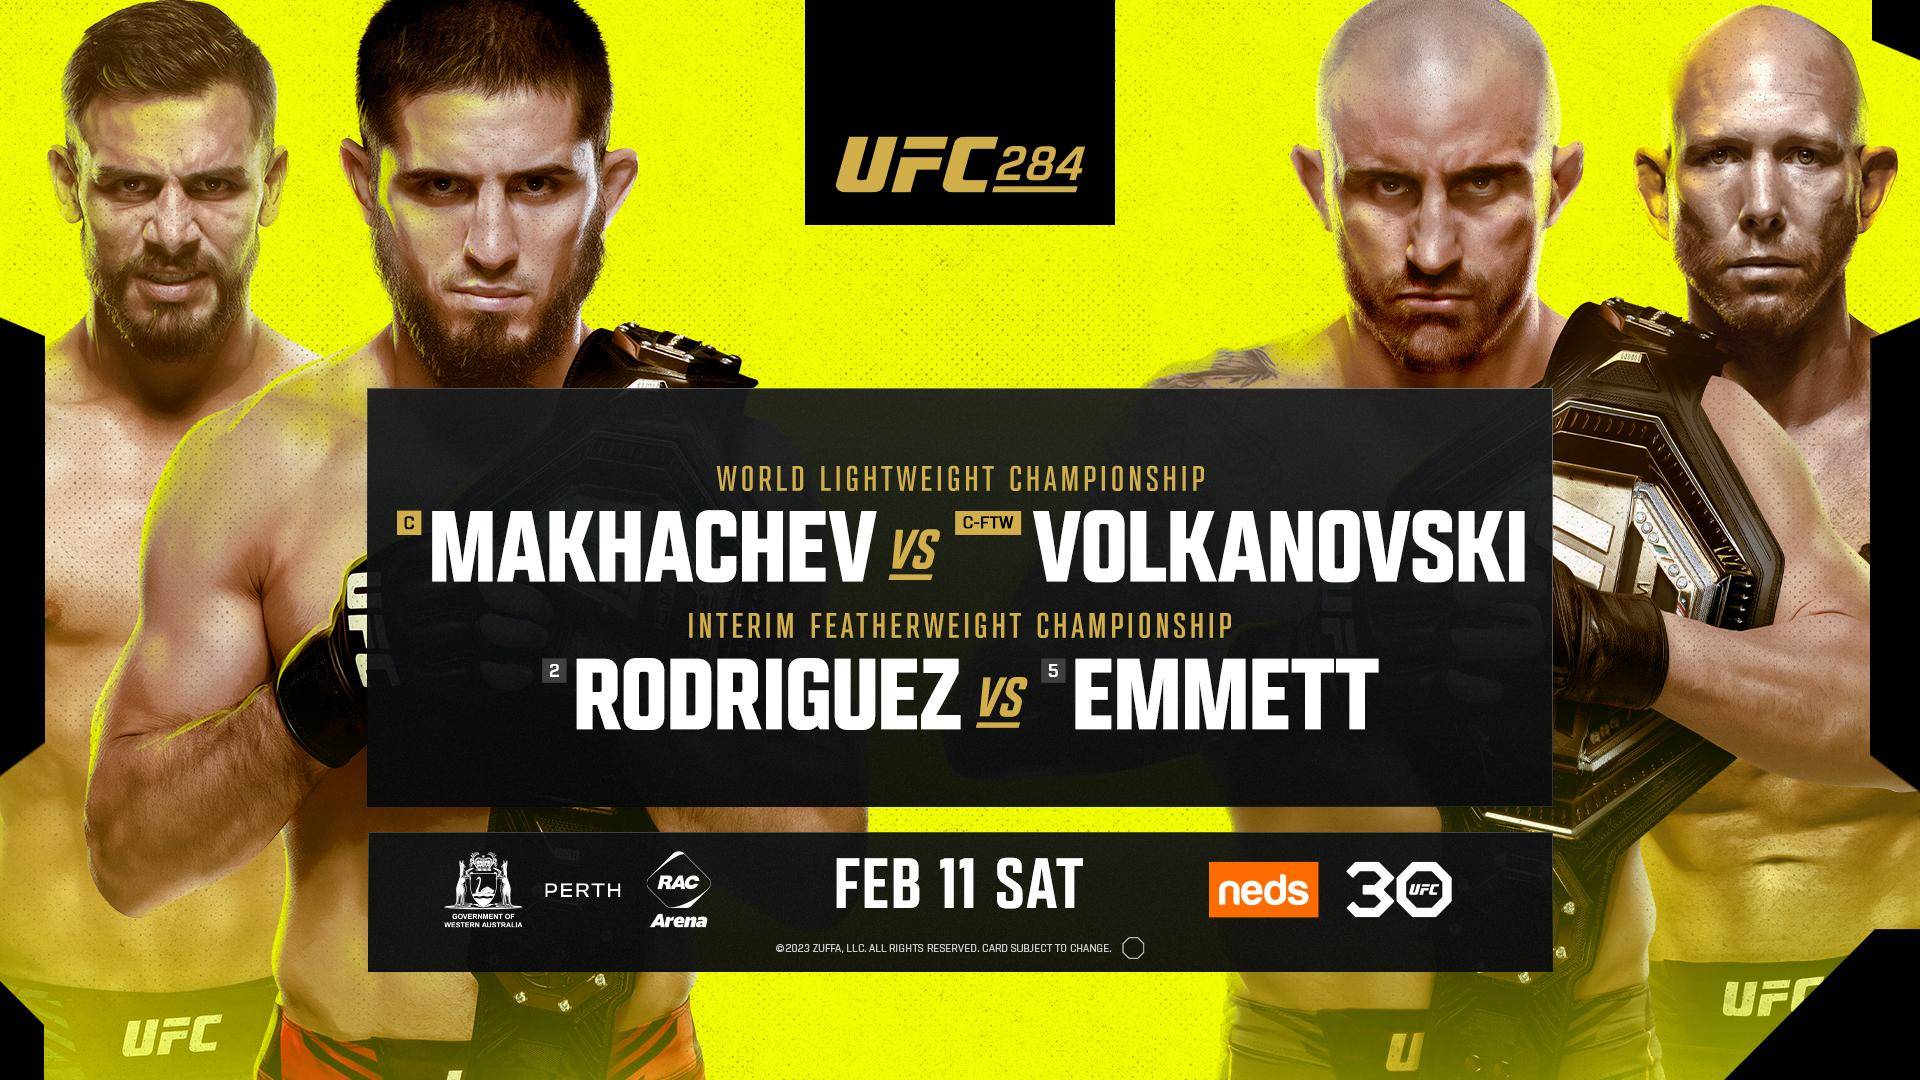 UFC 284: Makhachev vs. Volkanovski, Saturday, February 11